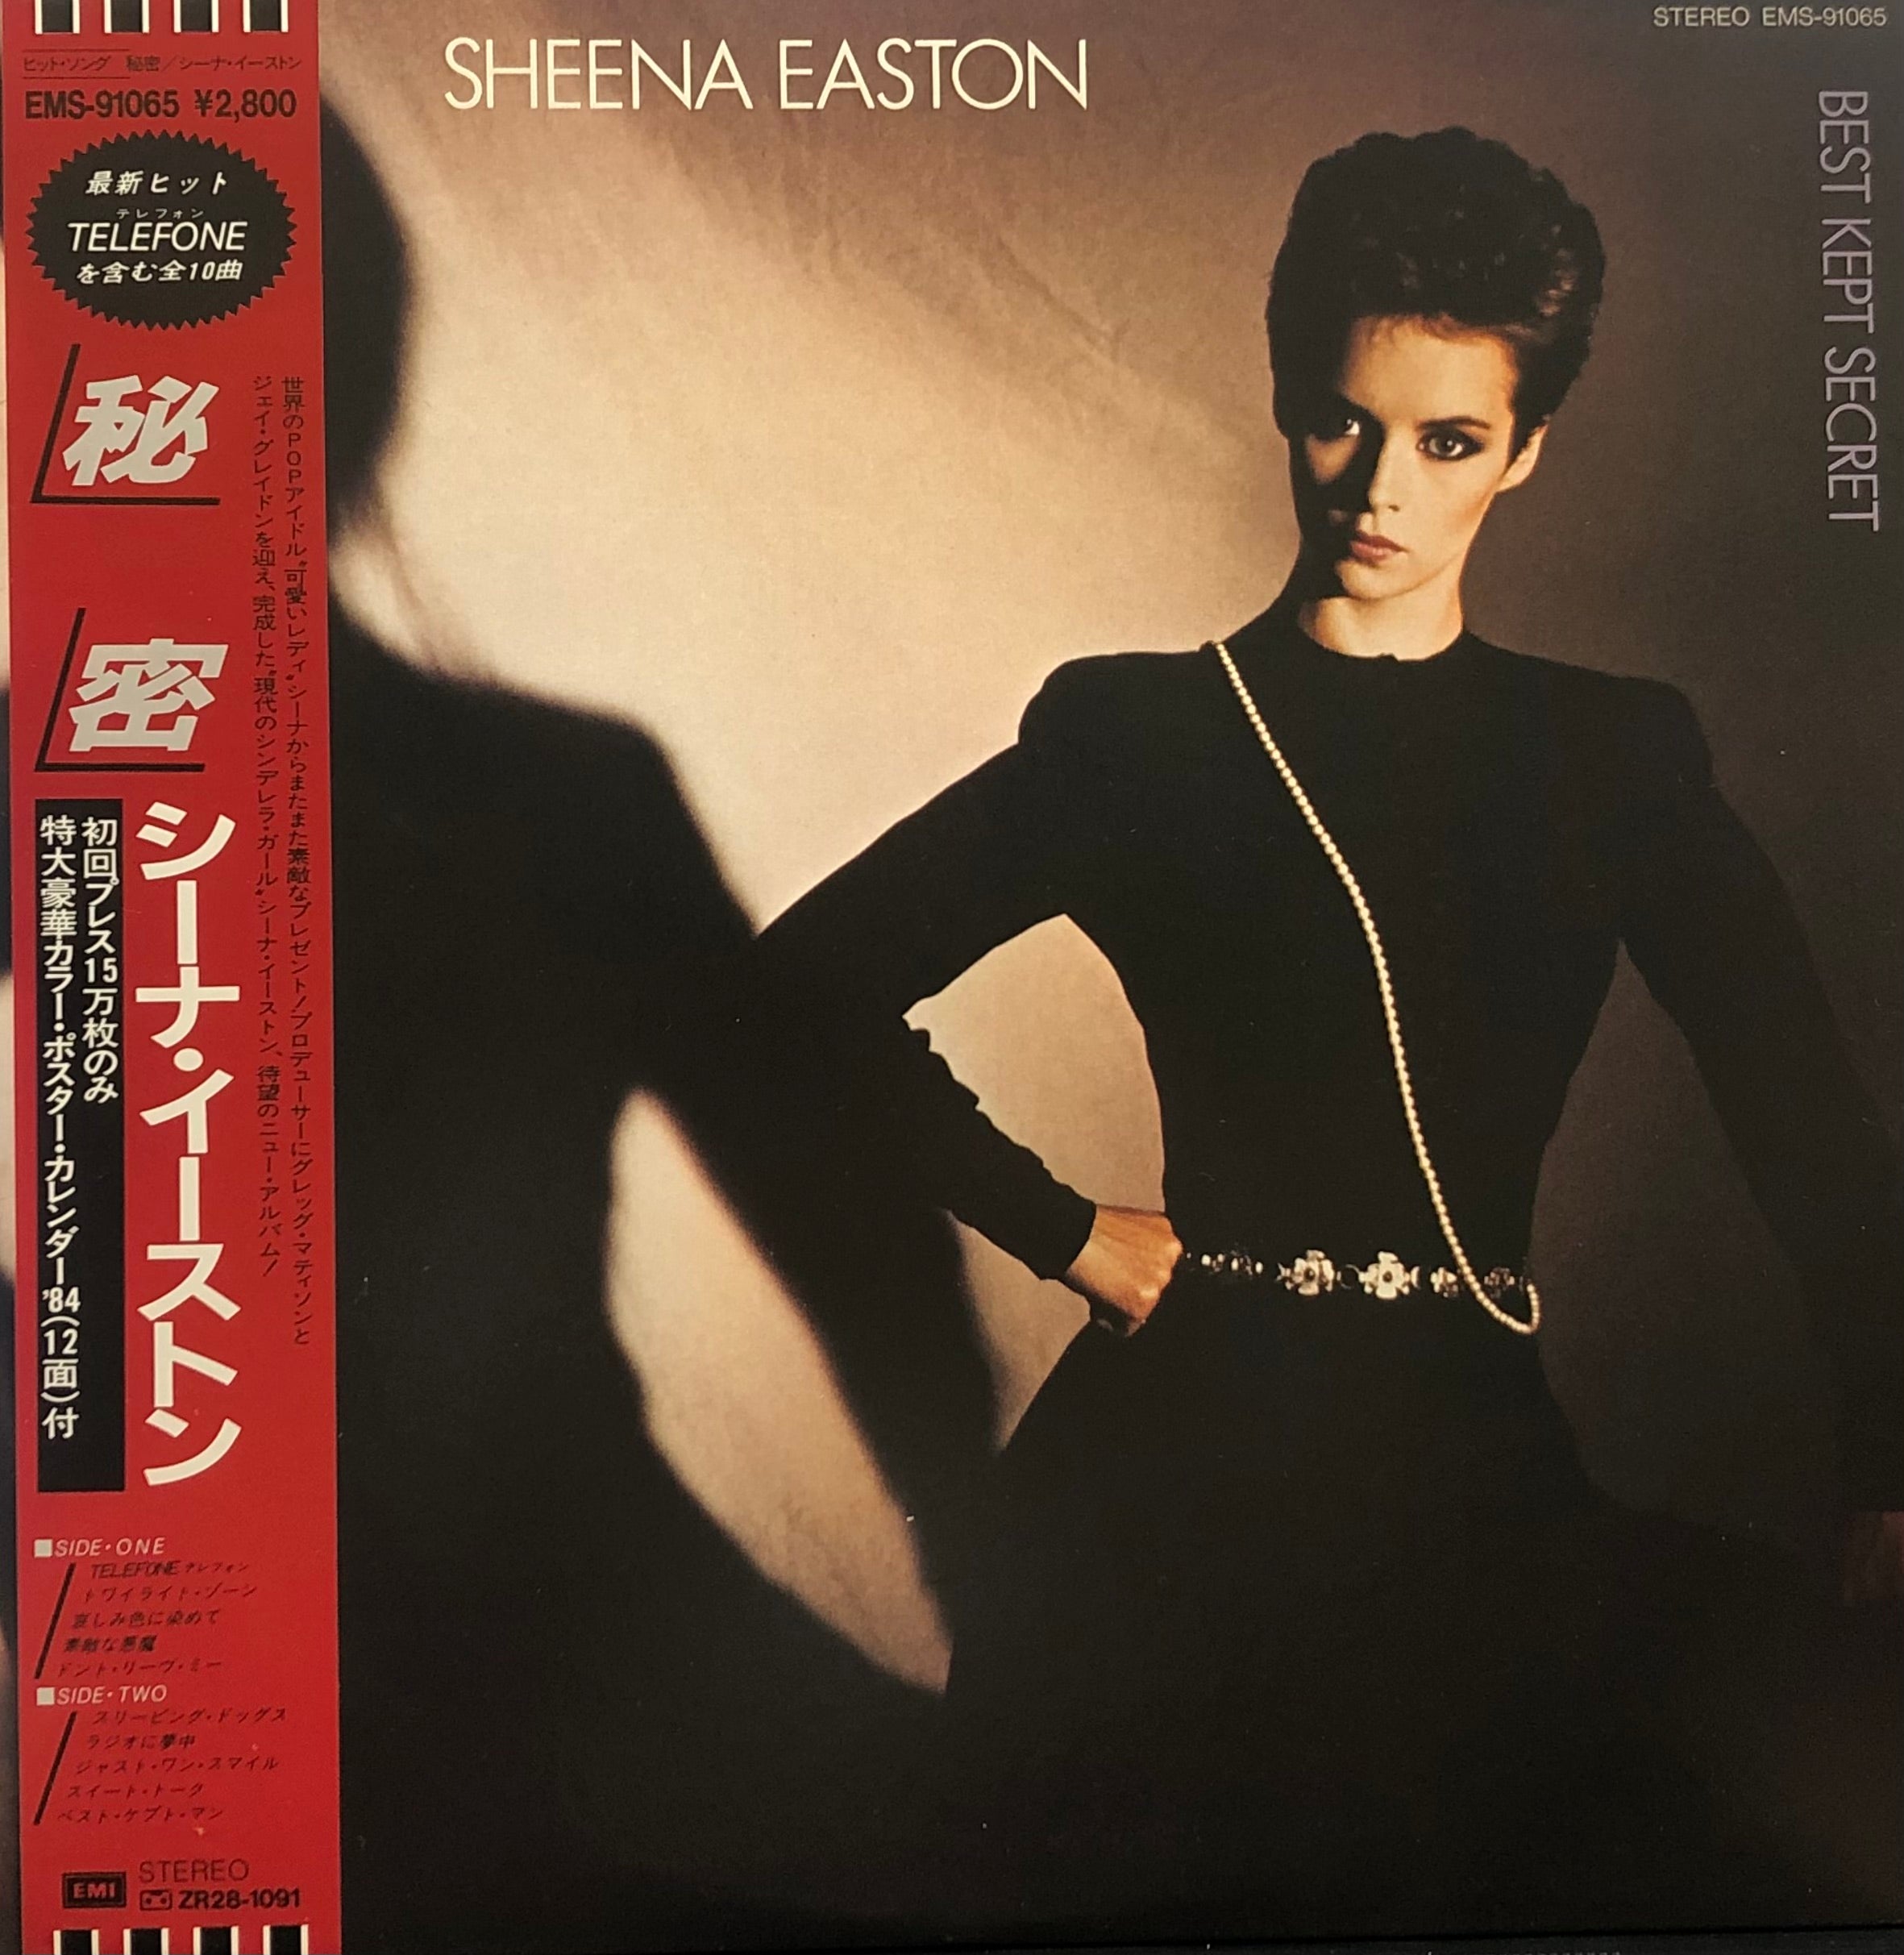 SHEENA EASTON / Best Kept Secret (EMI